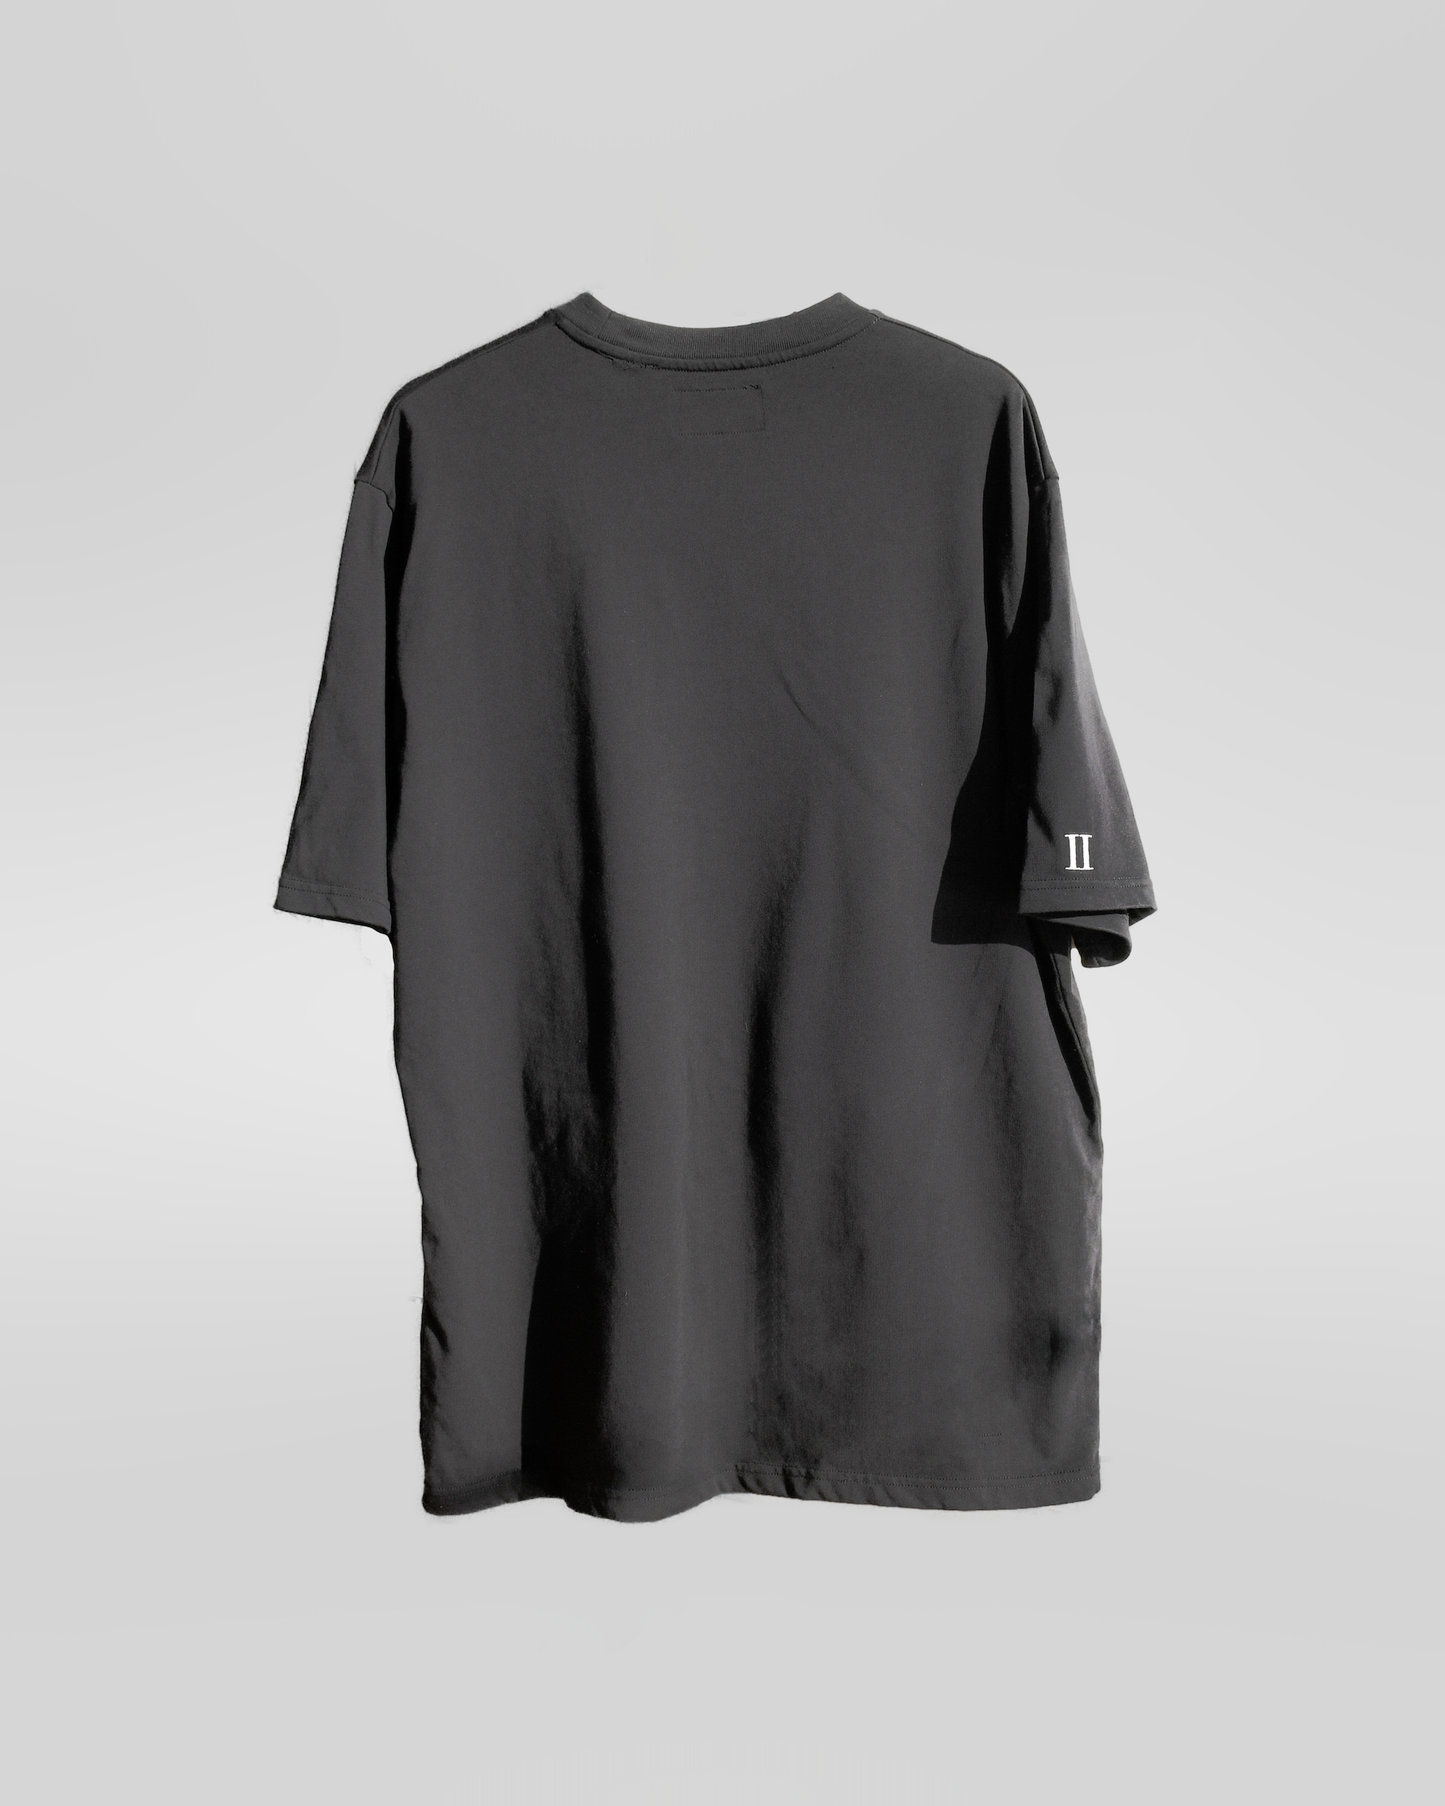 2FRATELLI Oversized T-Shirt black (unisex) - 2FRATELLI